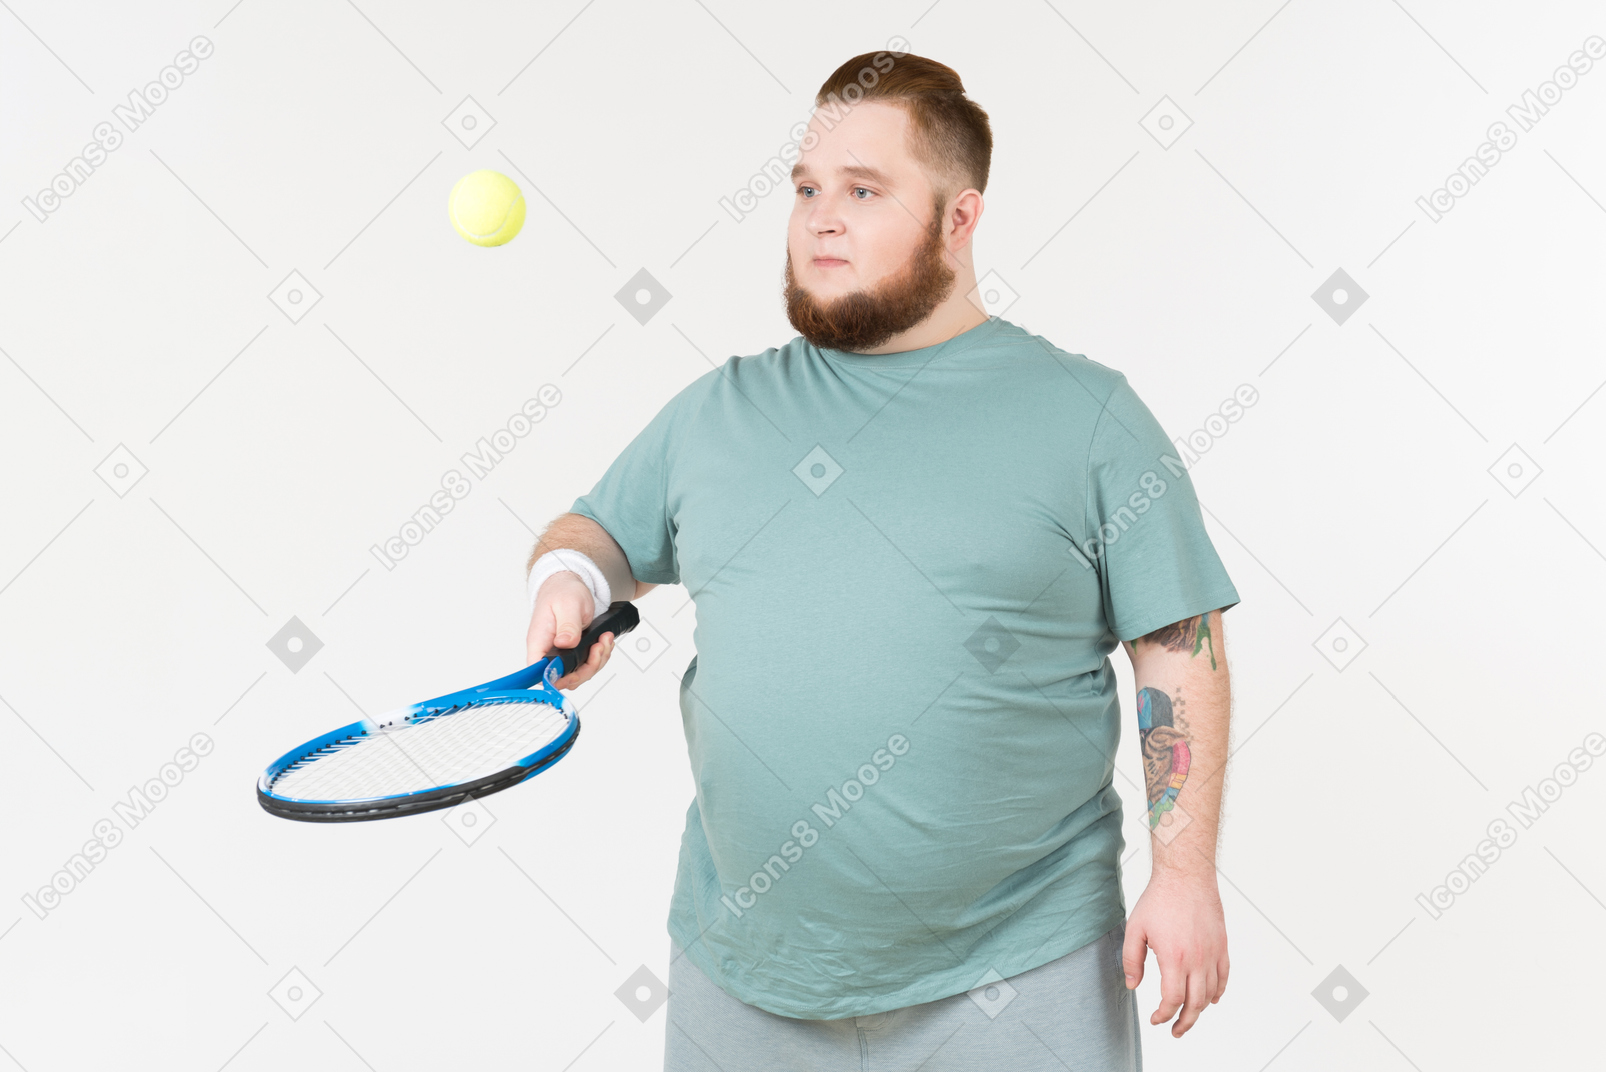 테니스 라켓으로 테니스 공을 따기 운동복에 큰 사람